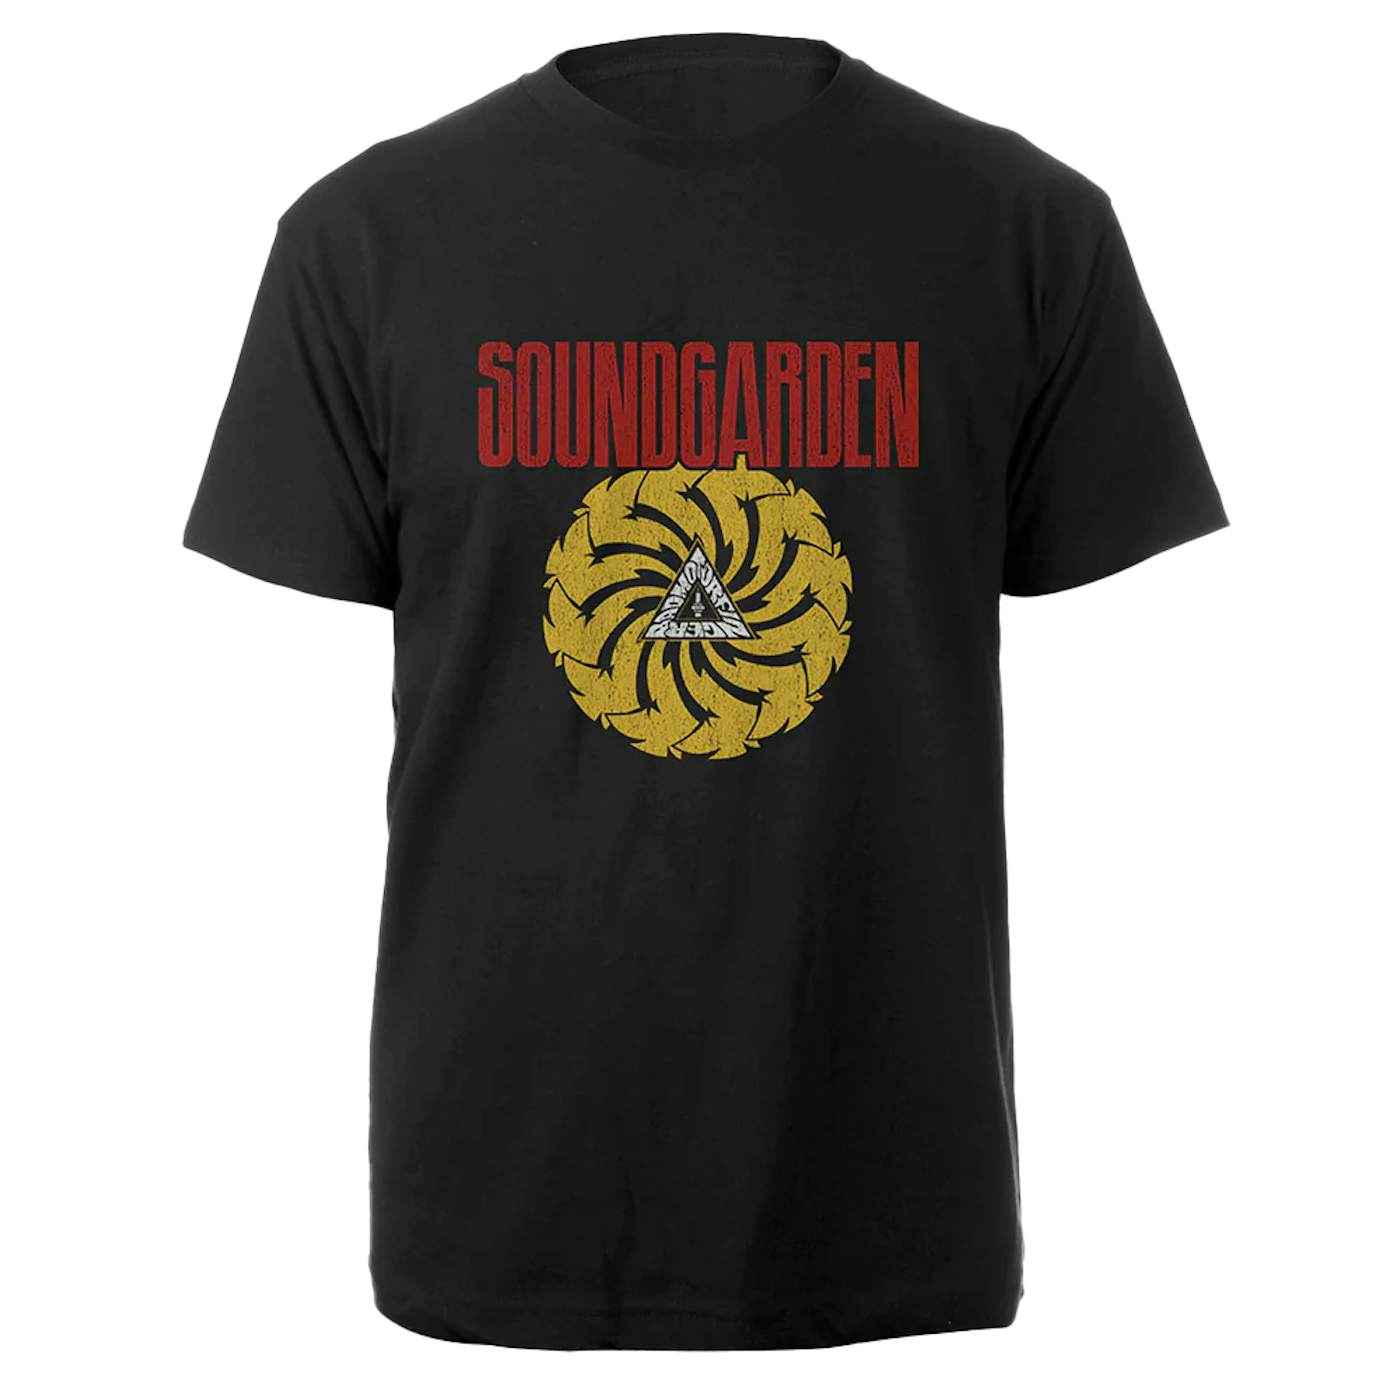 Soundgarden Badmotorfinger Tee